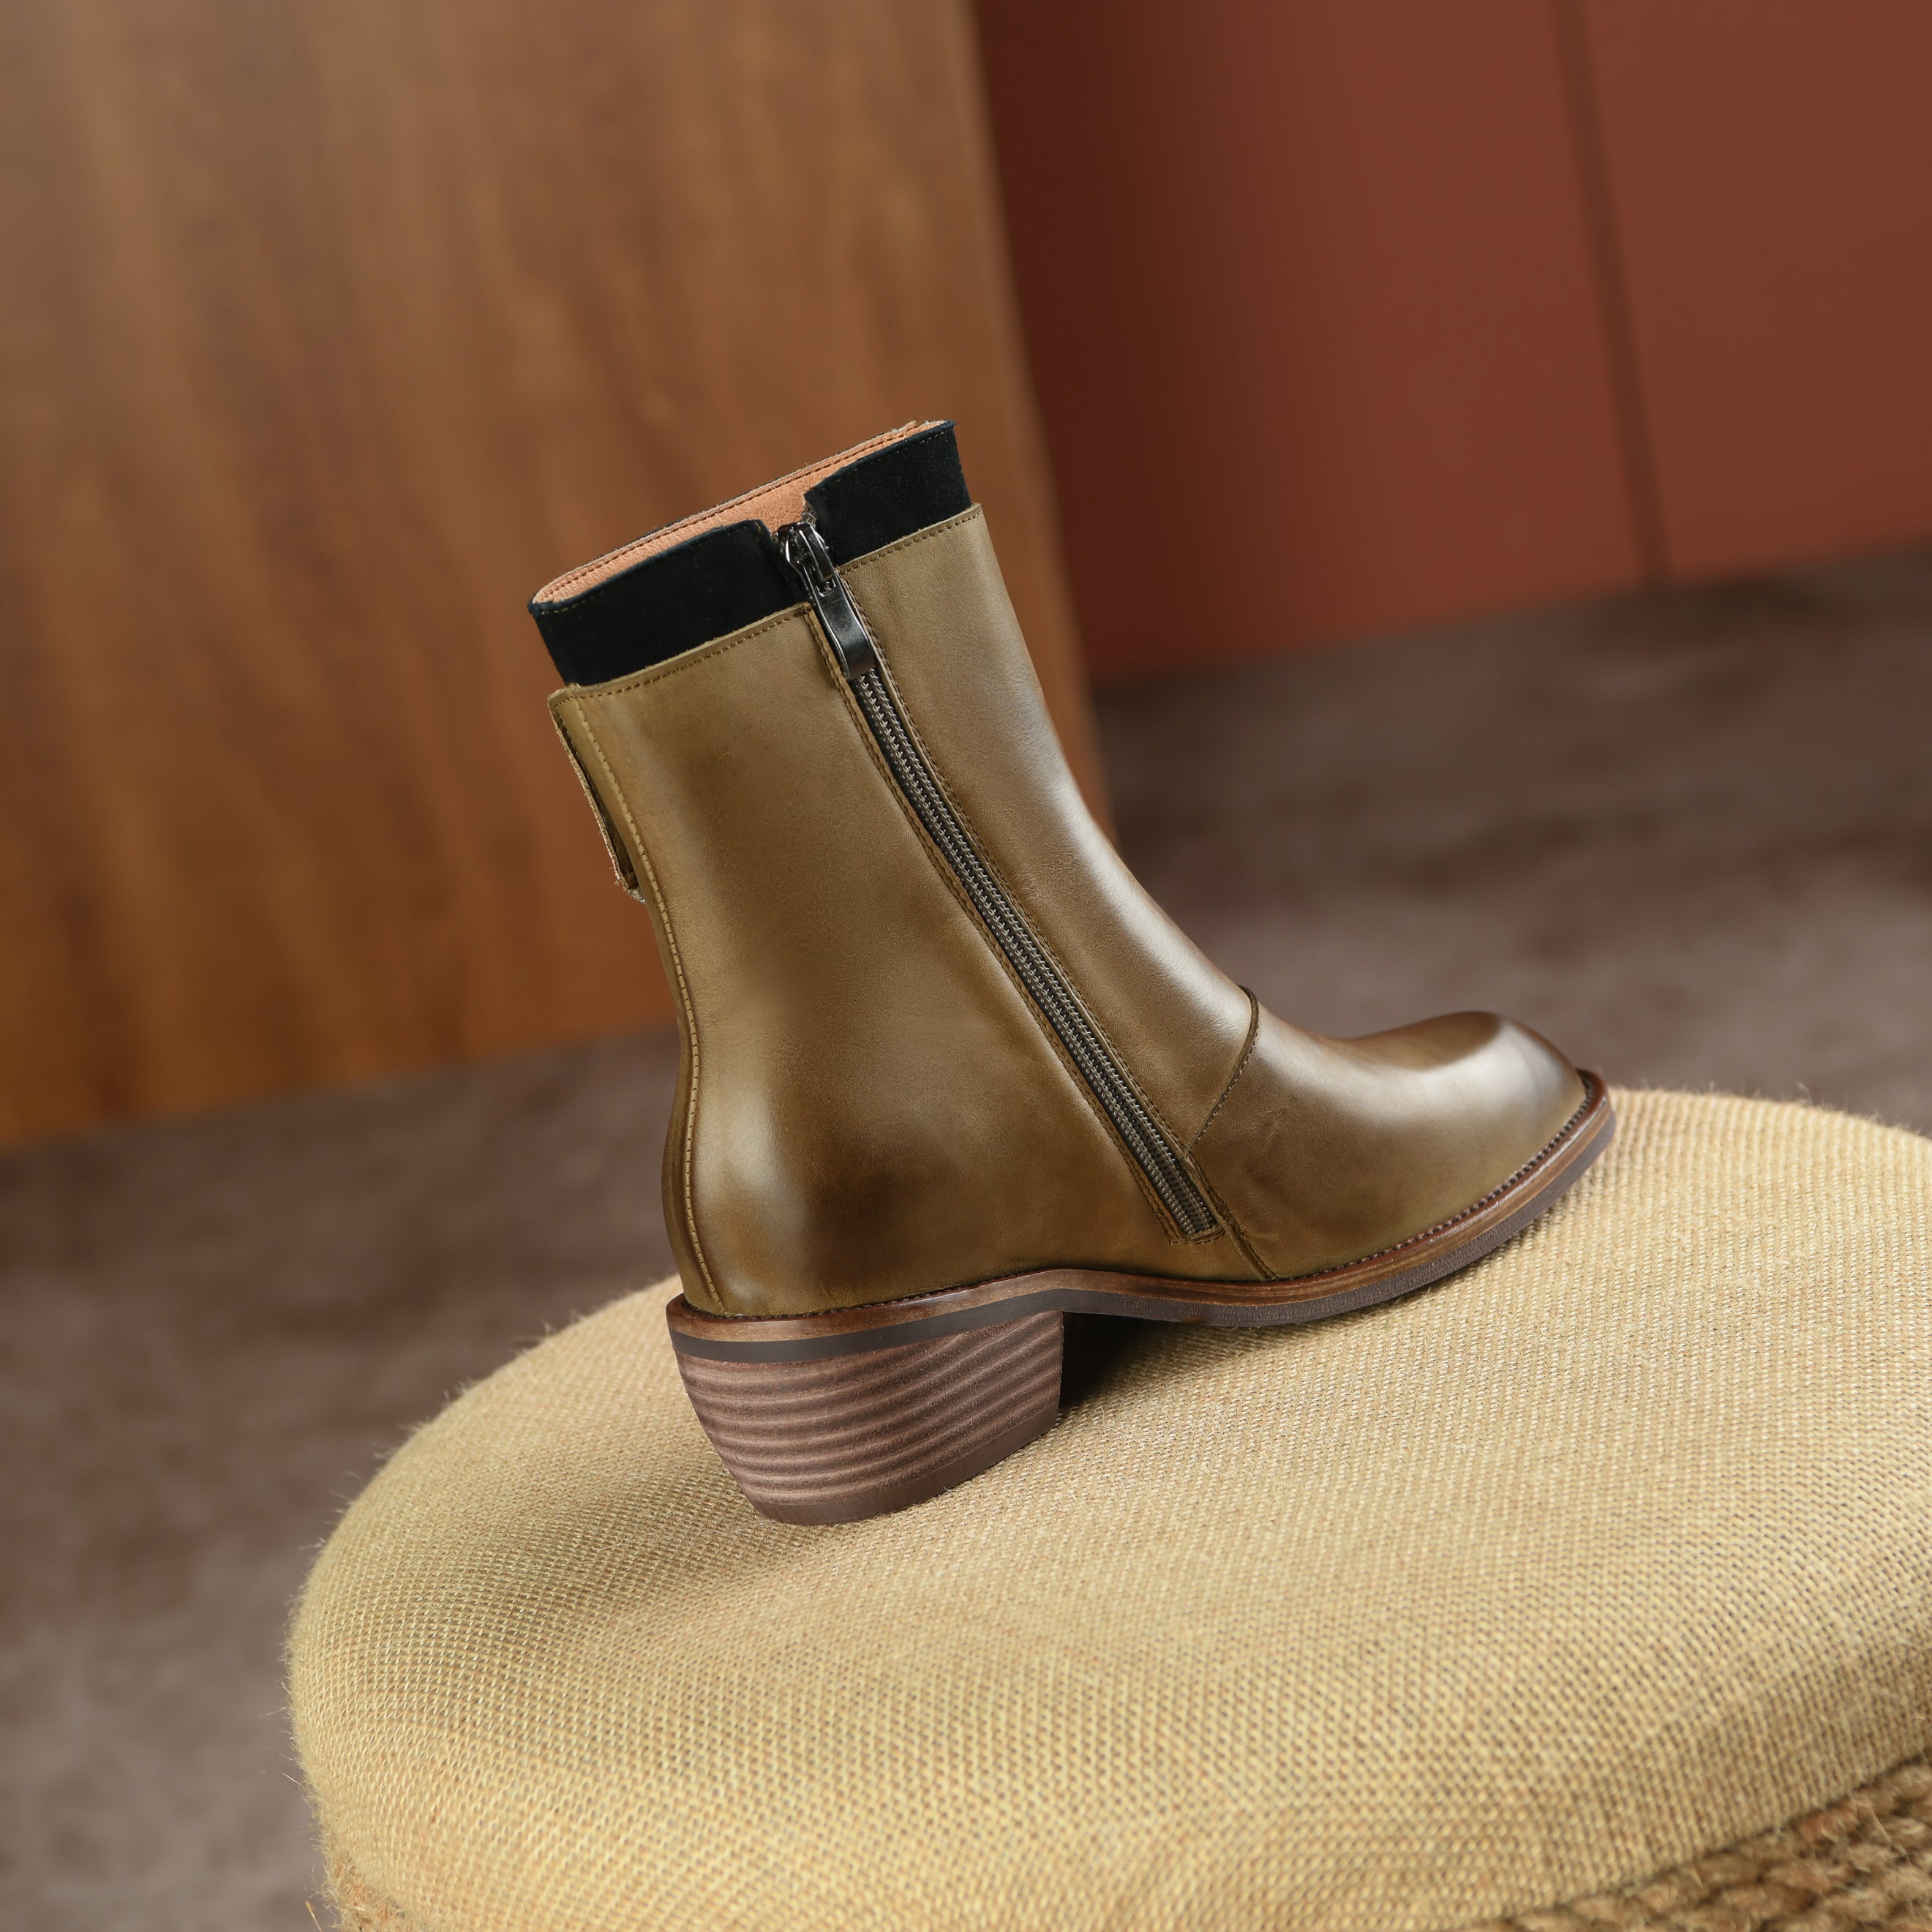 Bigsizeheels Polished round toe retro short boots - Green freeshipping - bigsizeheel®-size5-size15 -All Plus Sizes Available!